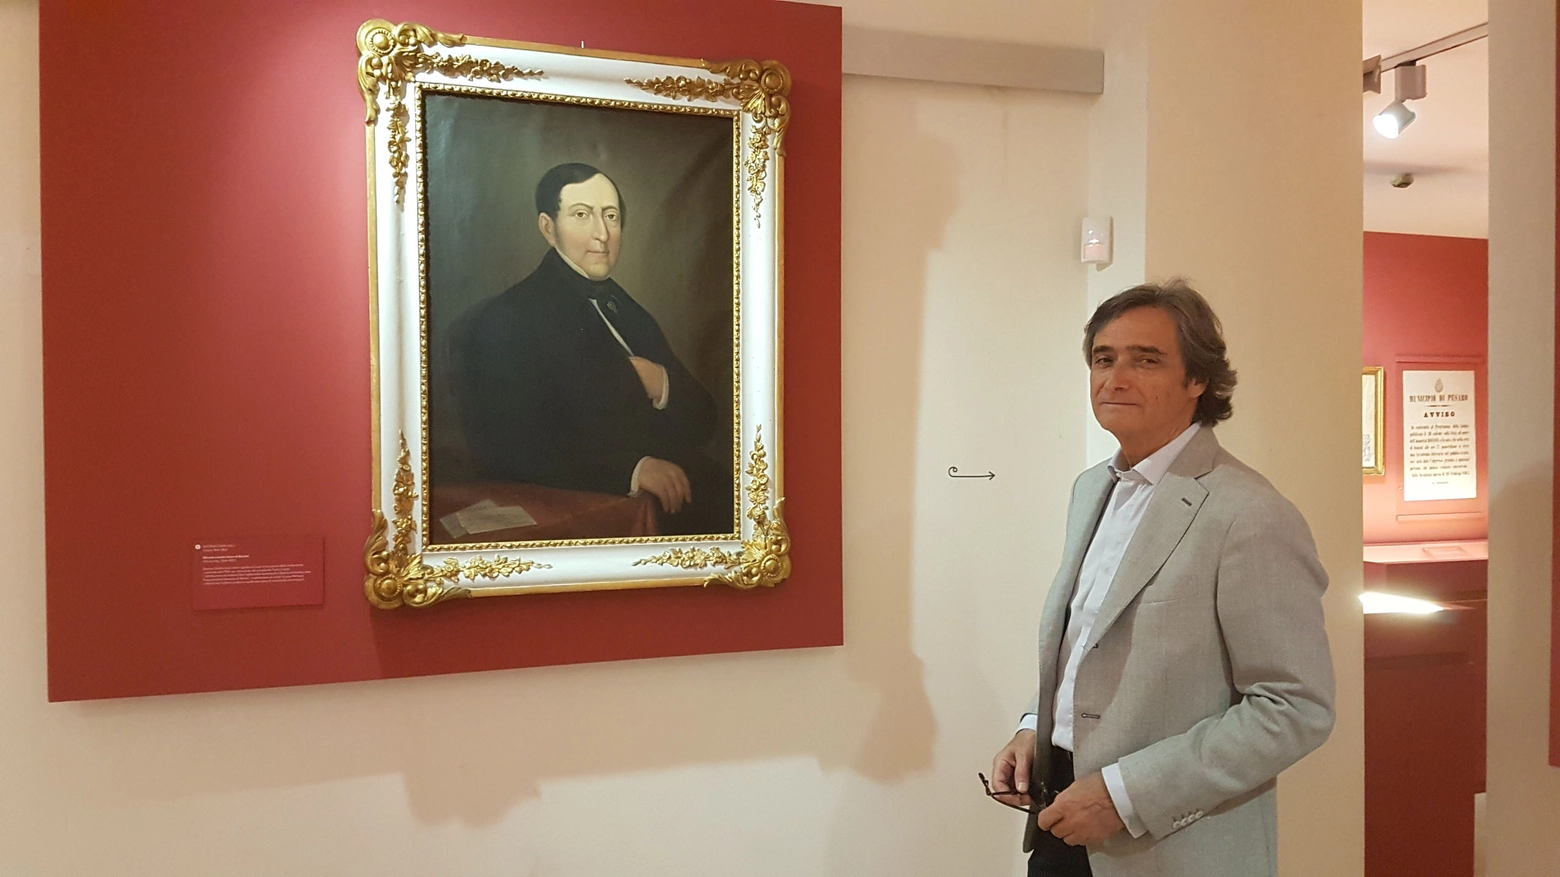 Mostra Rossini. Marco Salvarani, uno dei curatori